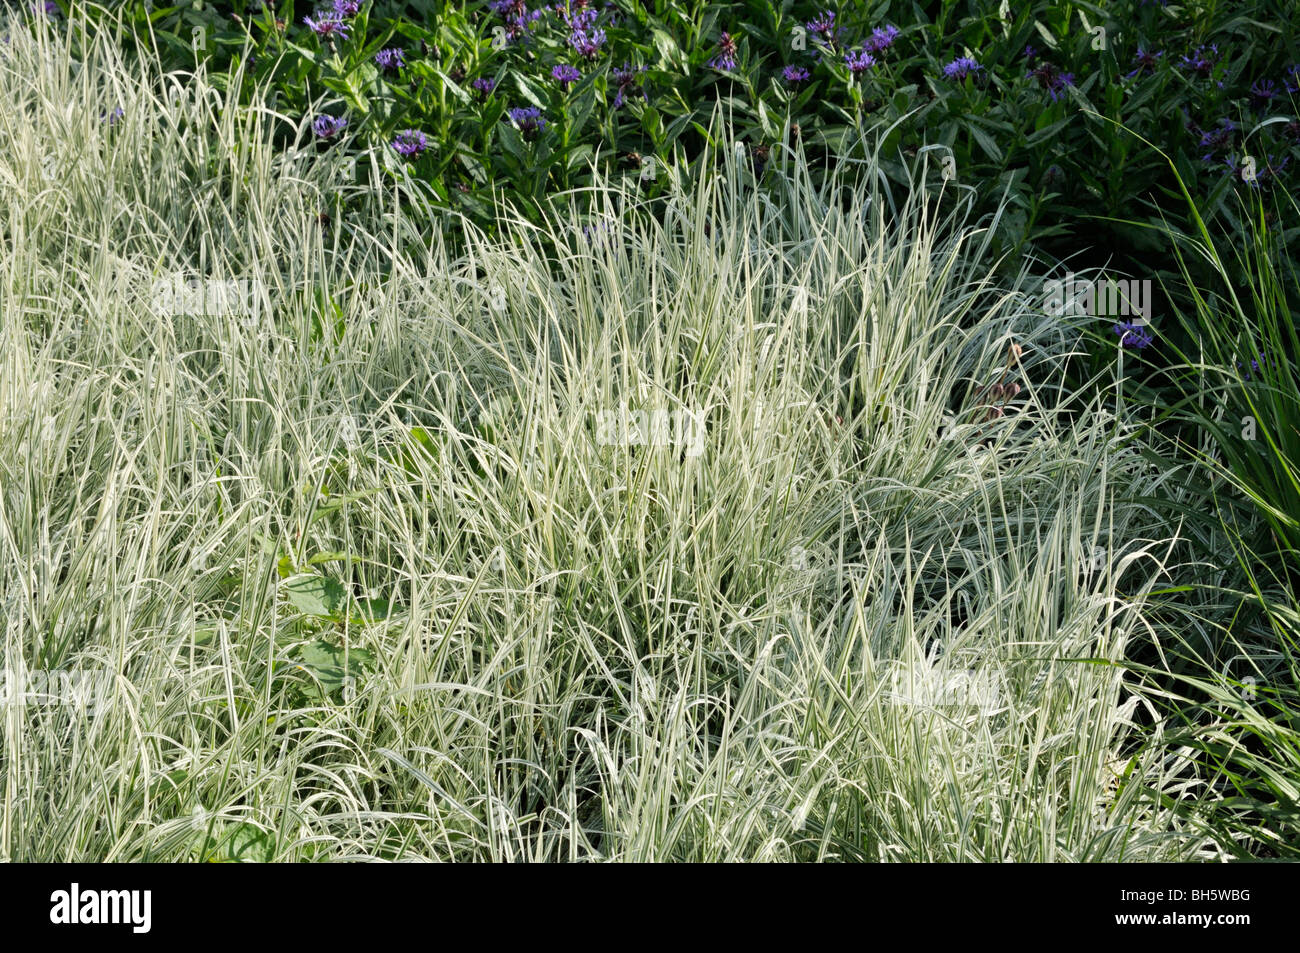 False oat grass (Arrhenatherum elatius) Stock Photo